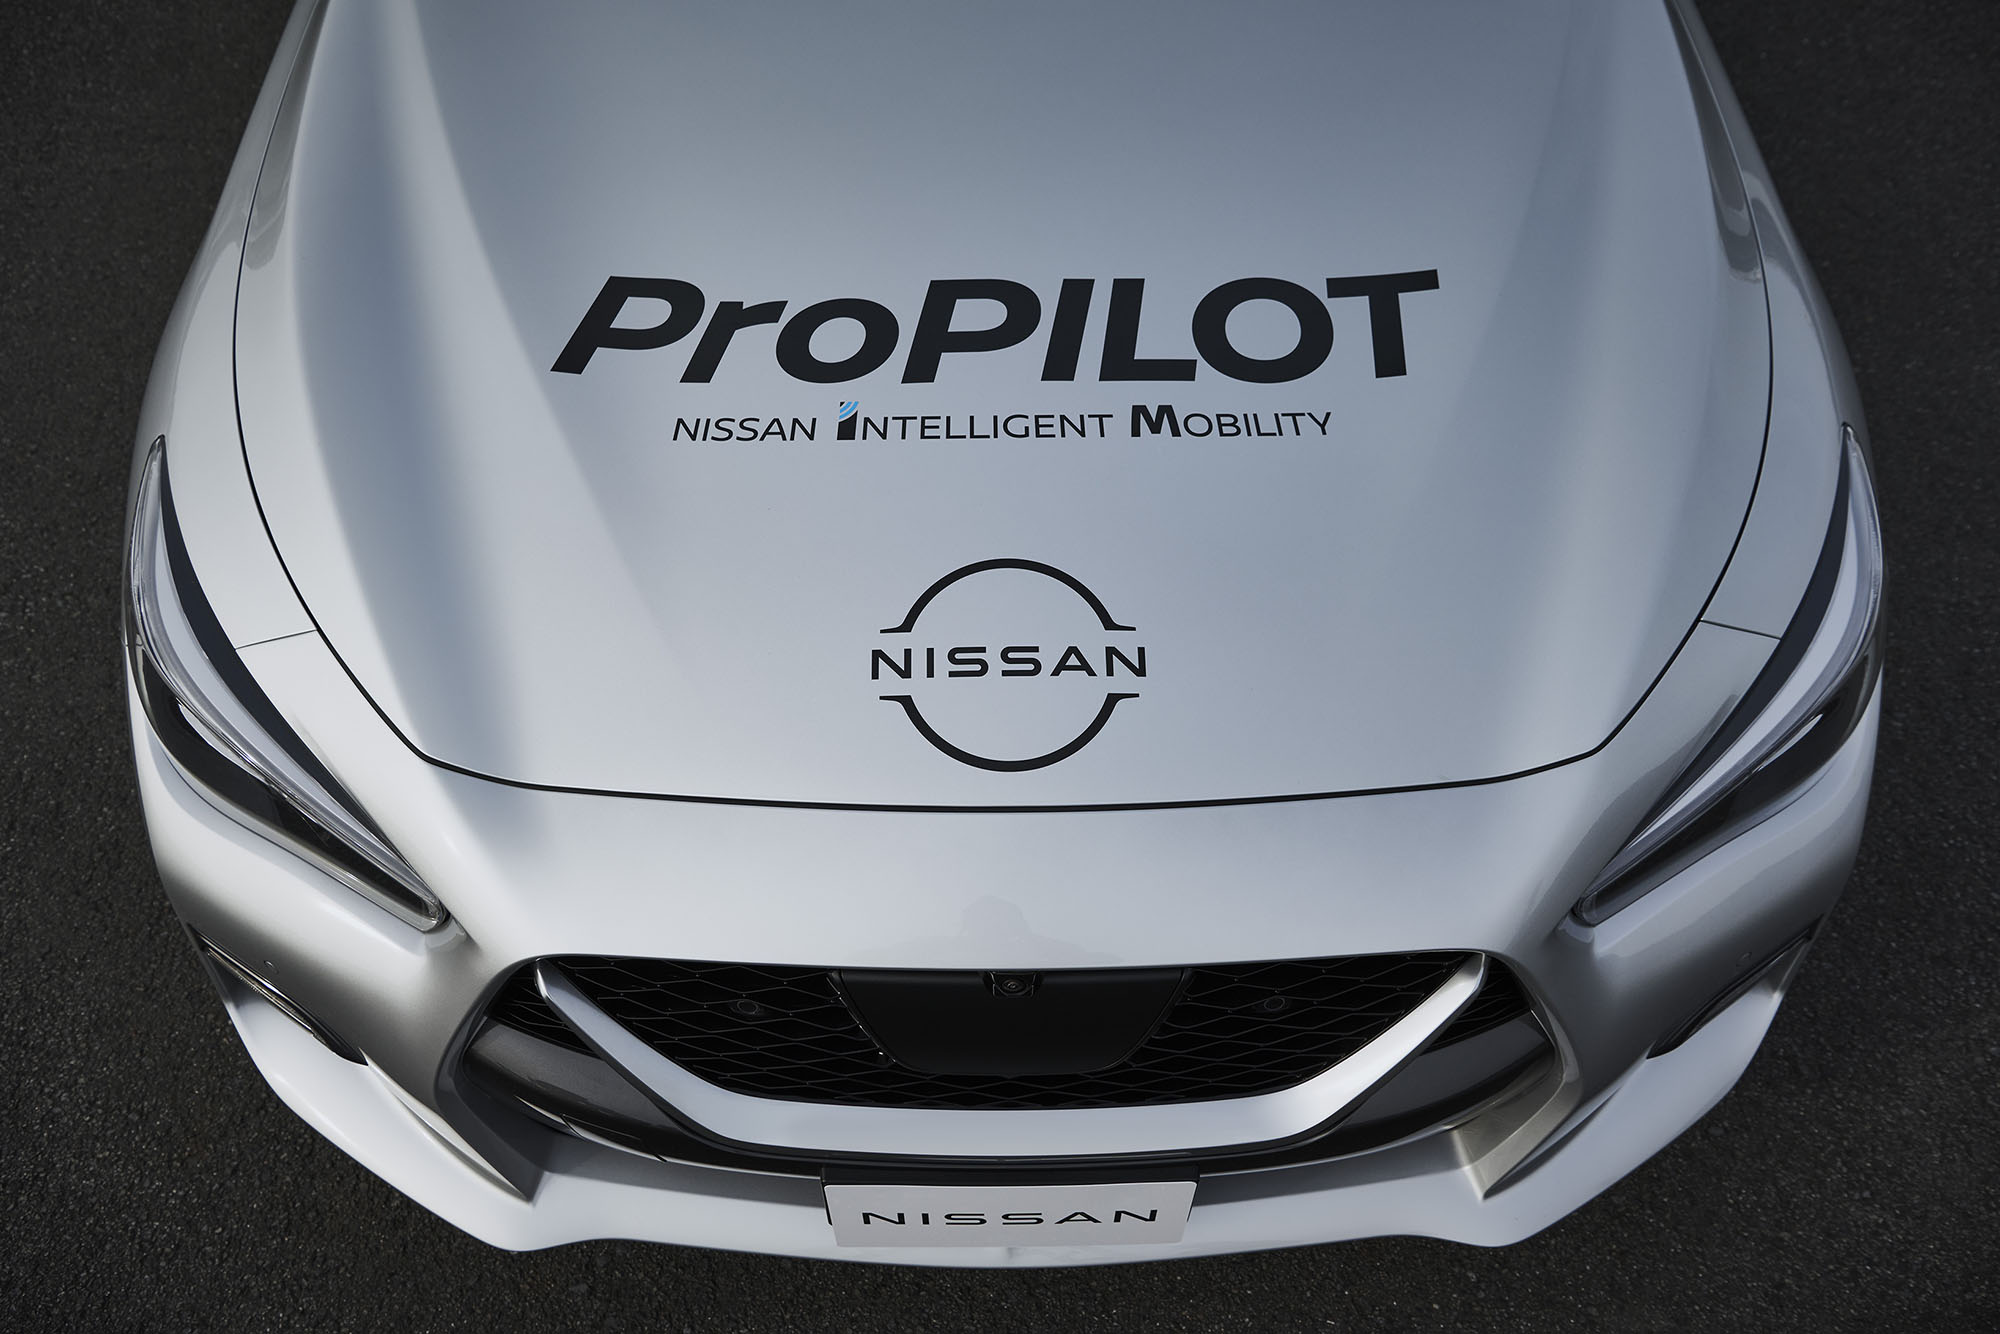 Nissan ProPILOT Concept Zero test vehicle